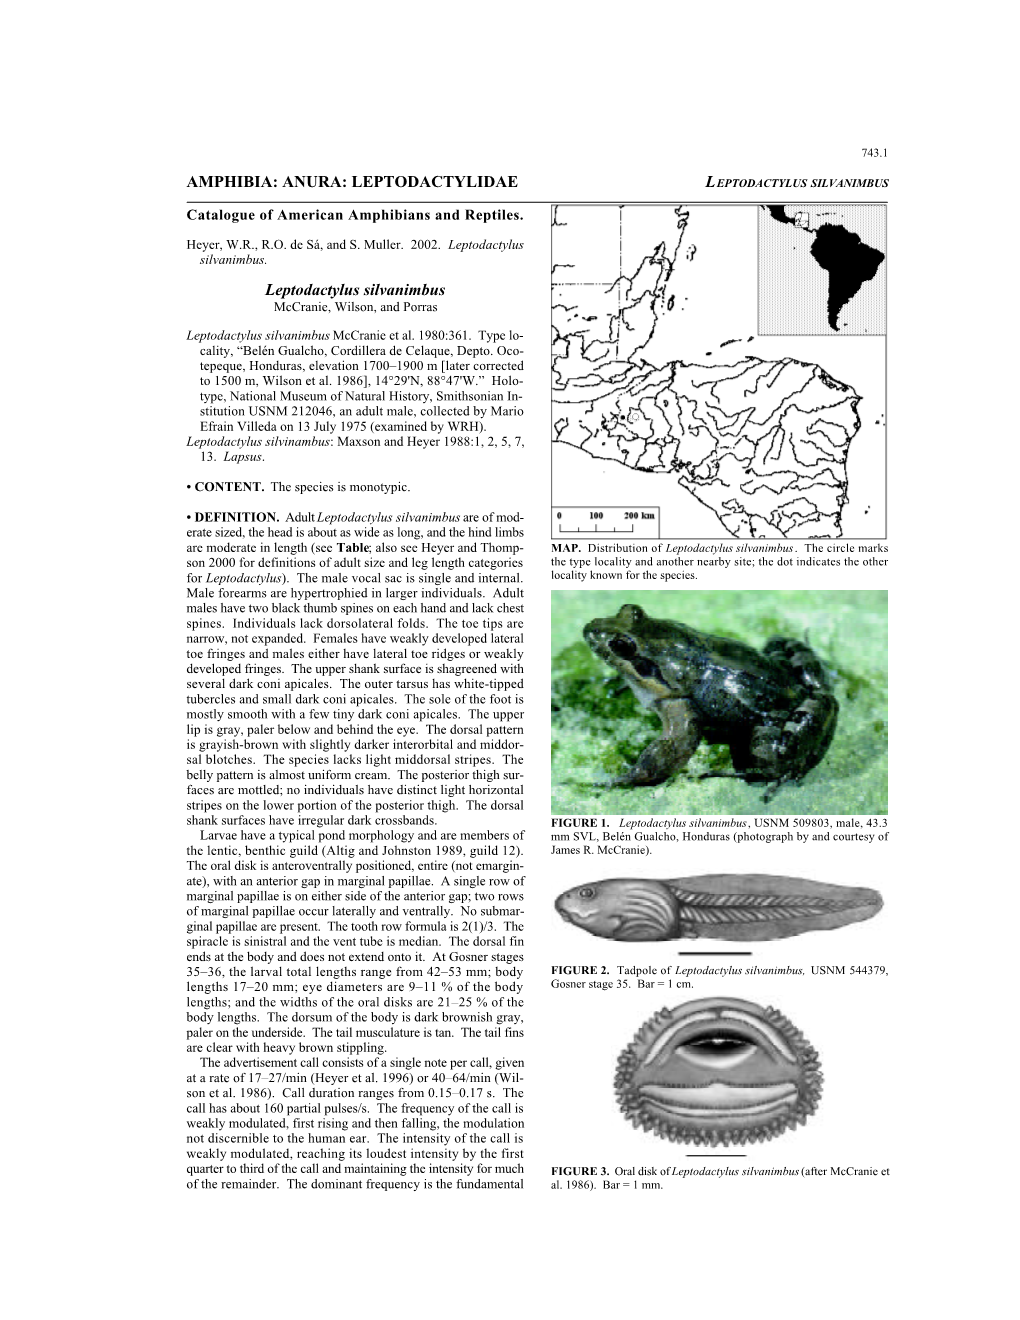 Leptodactylidae Leptodactylus Silvanimbus